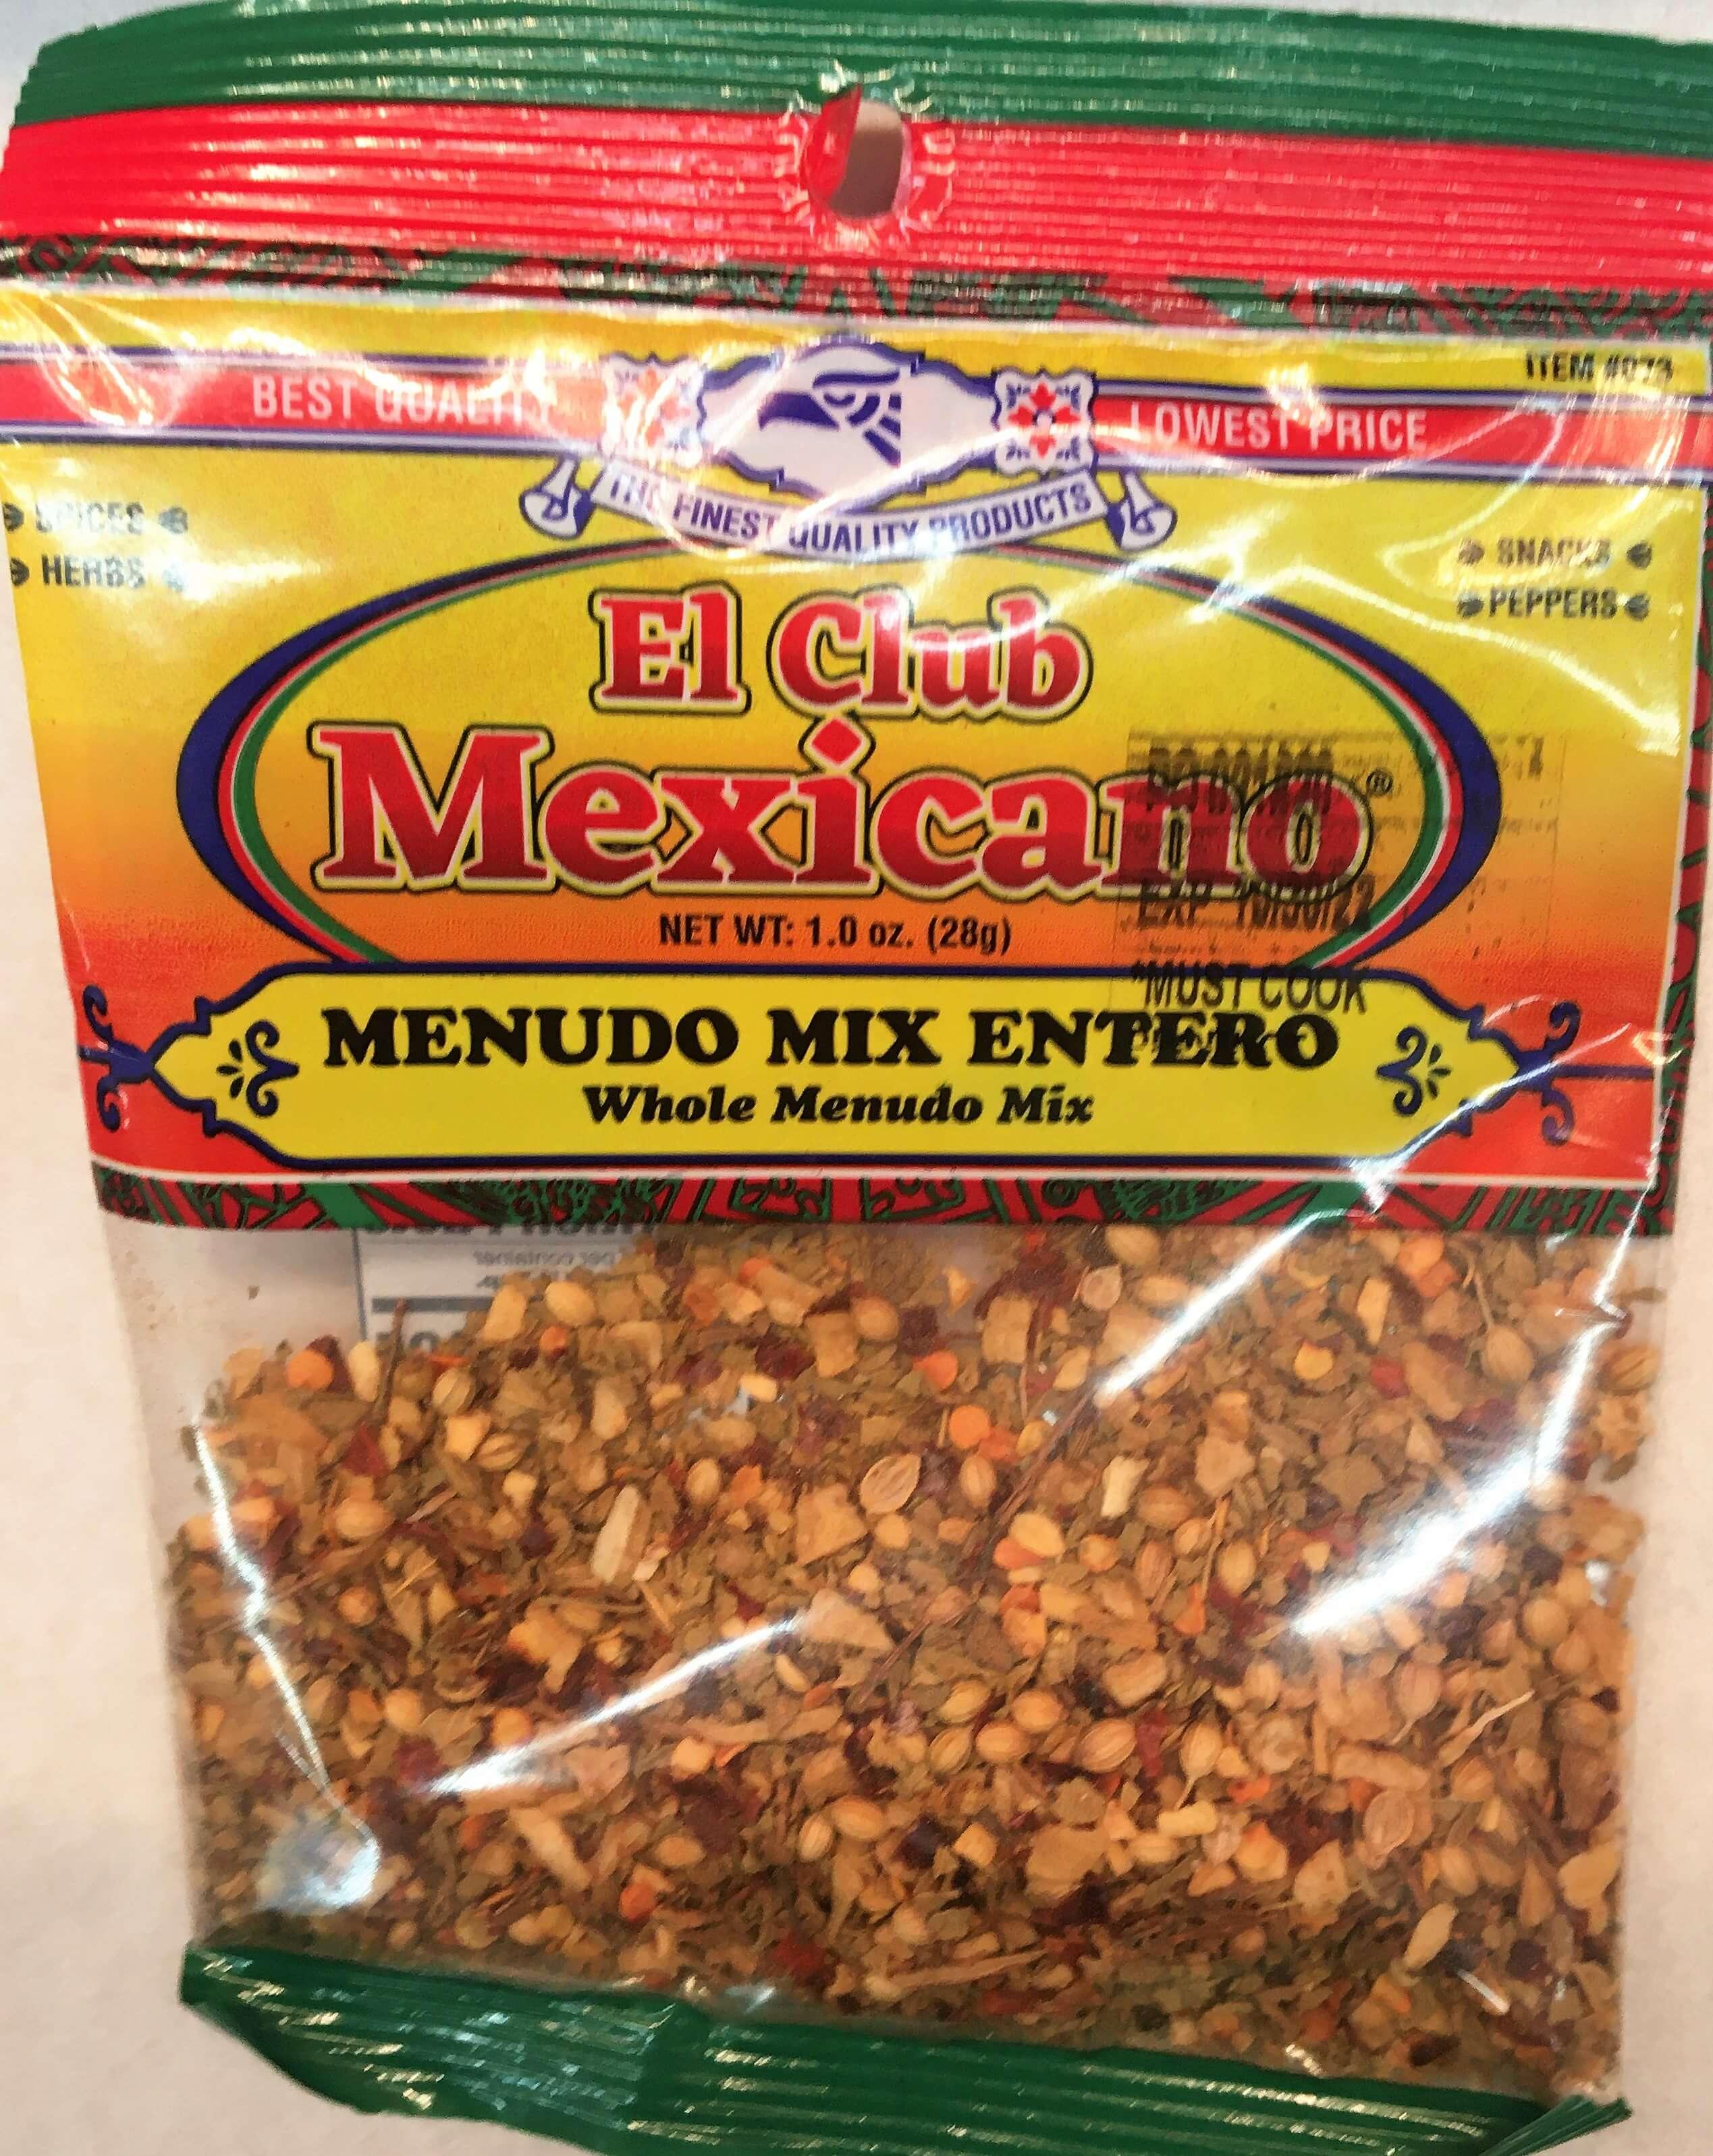 El Club Mexicano - Whole Menudo Mix 1.0 oz.